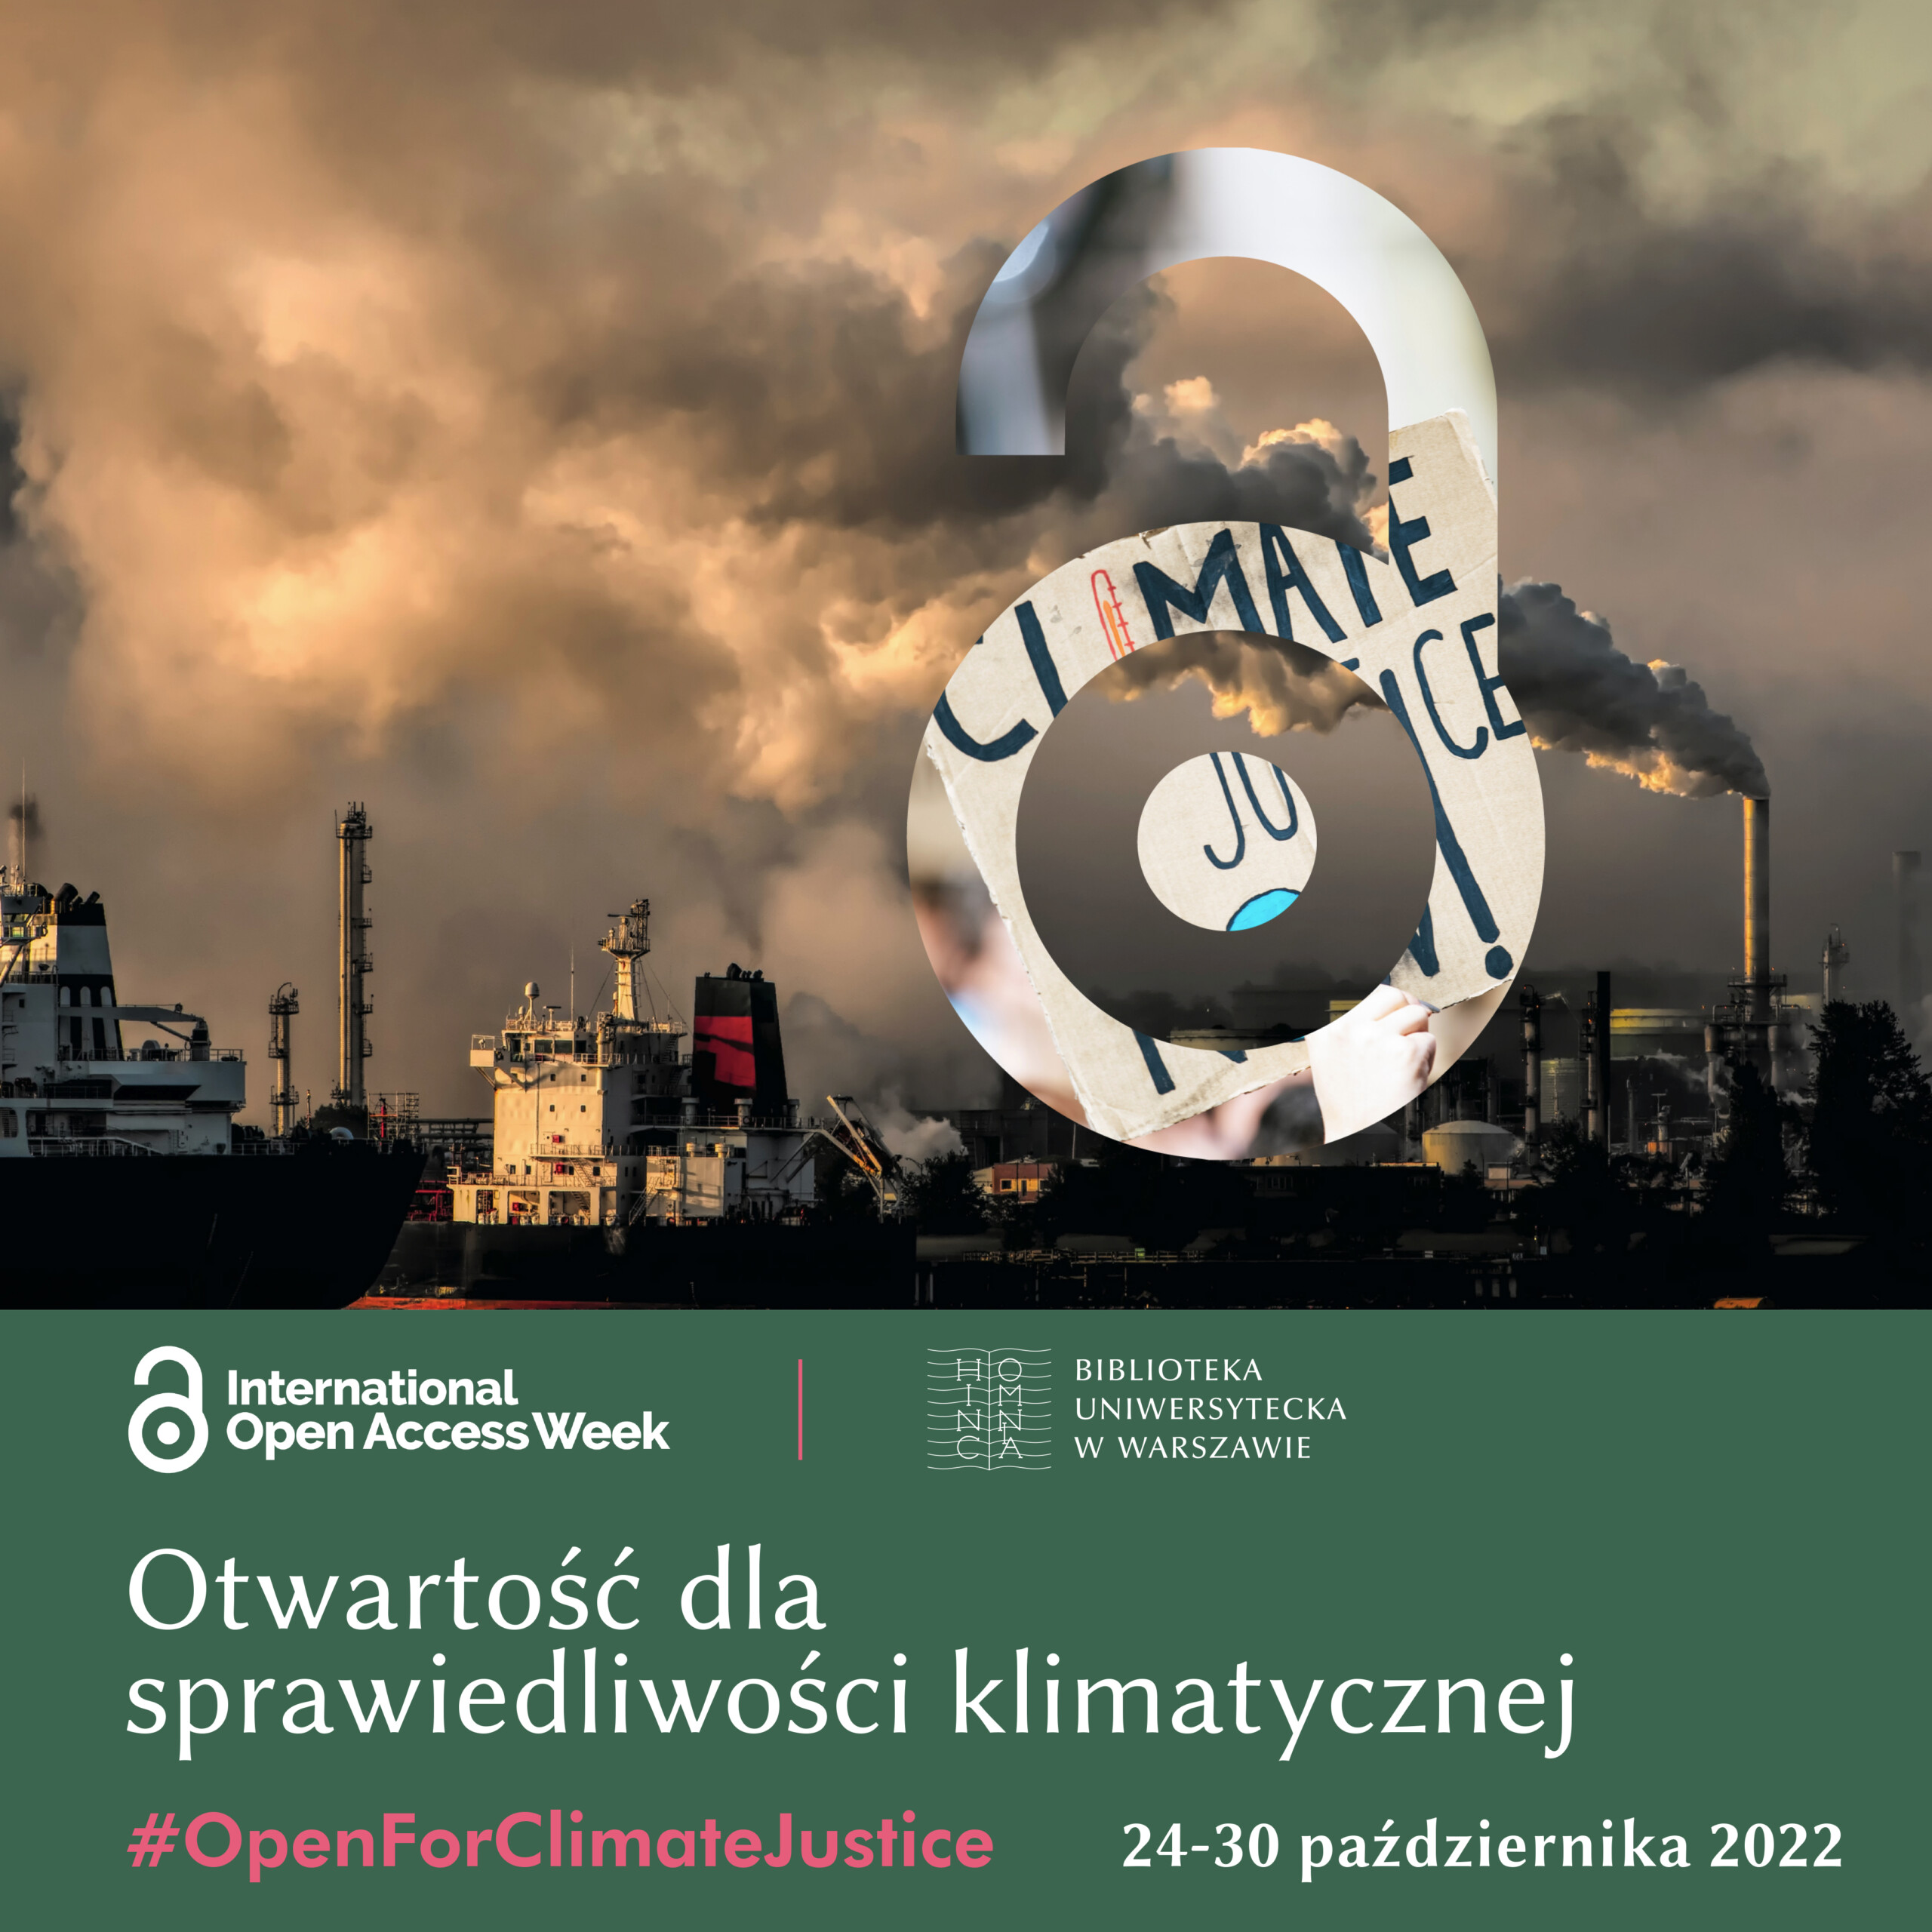 Grafika Internationa Open Access Week, na nie zdjęcie portu z wydobywającym się z kominów dymem.